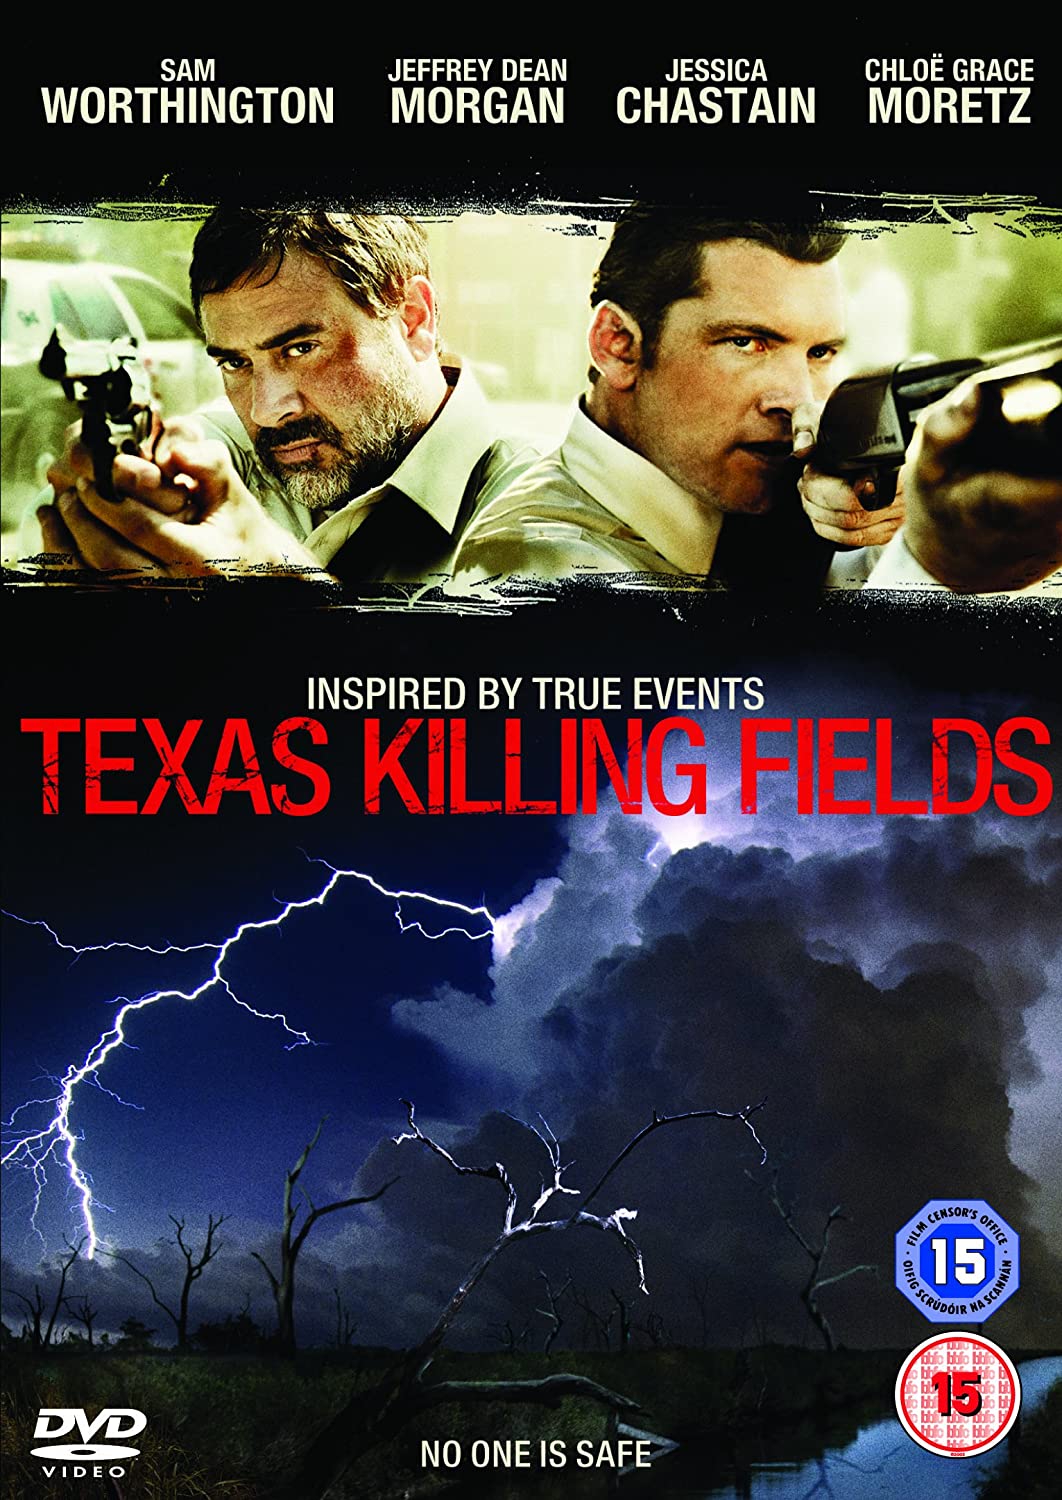 Texas Killing Fields - Crime/Thriller [DVD]